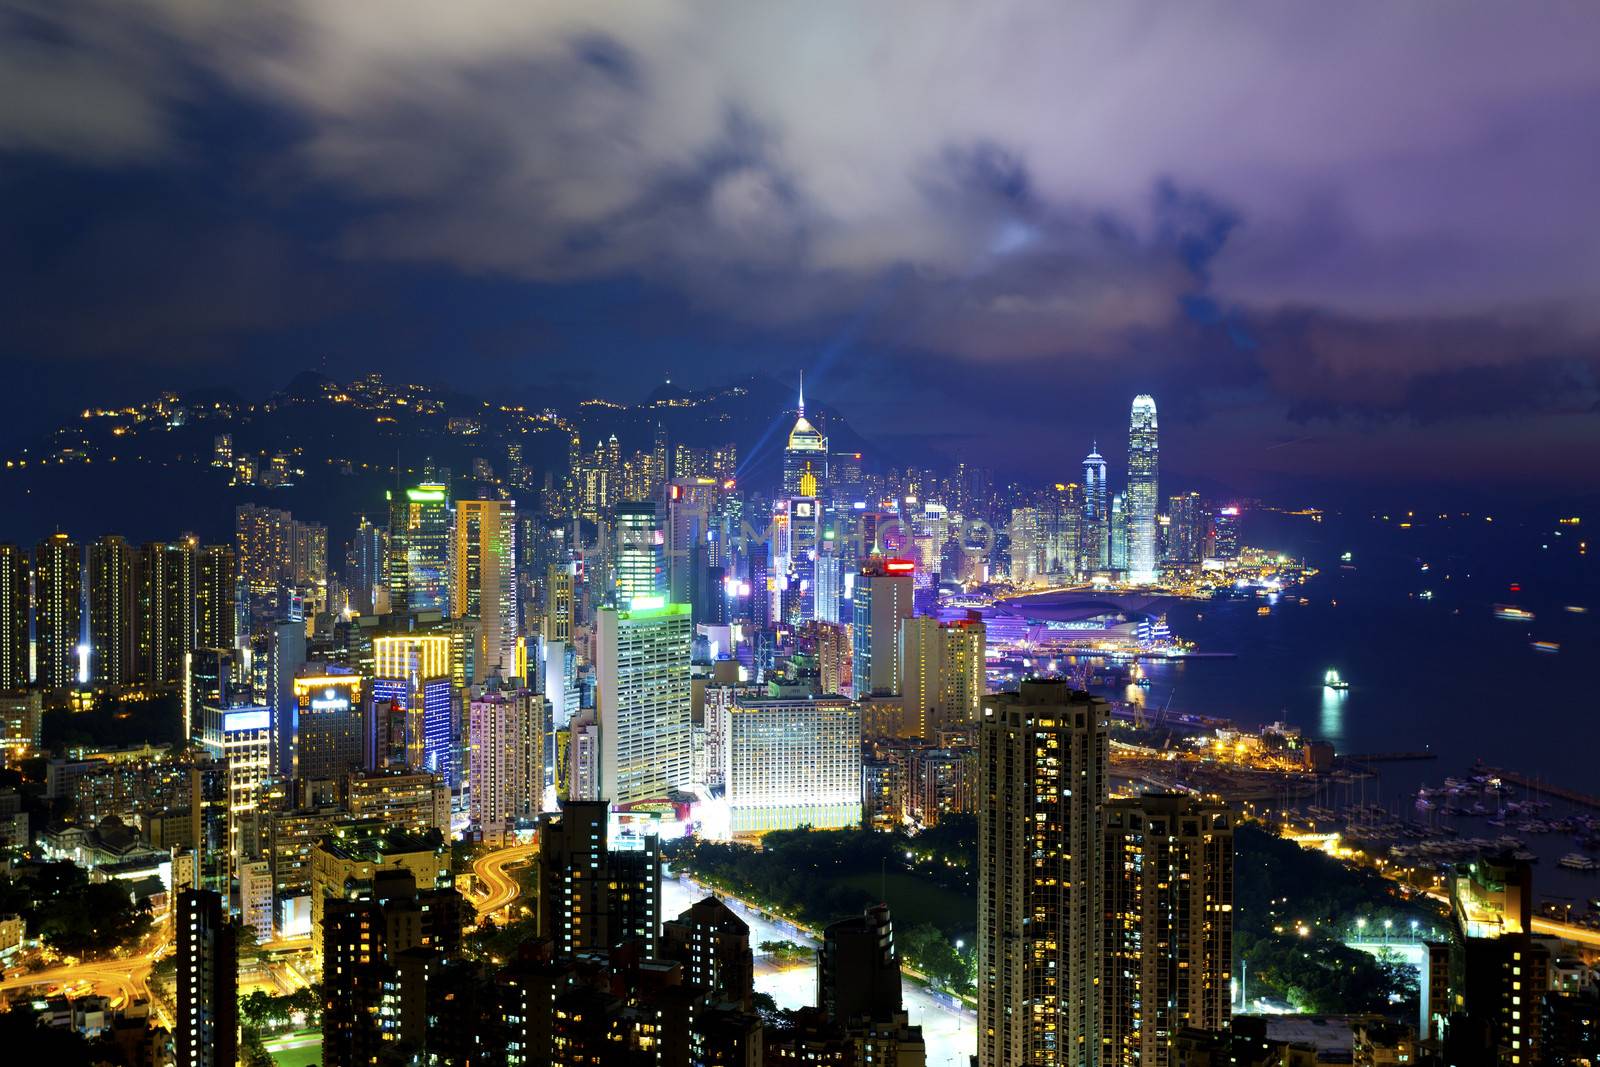 Hong Kong at night by kawing921